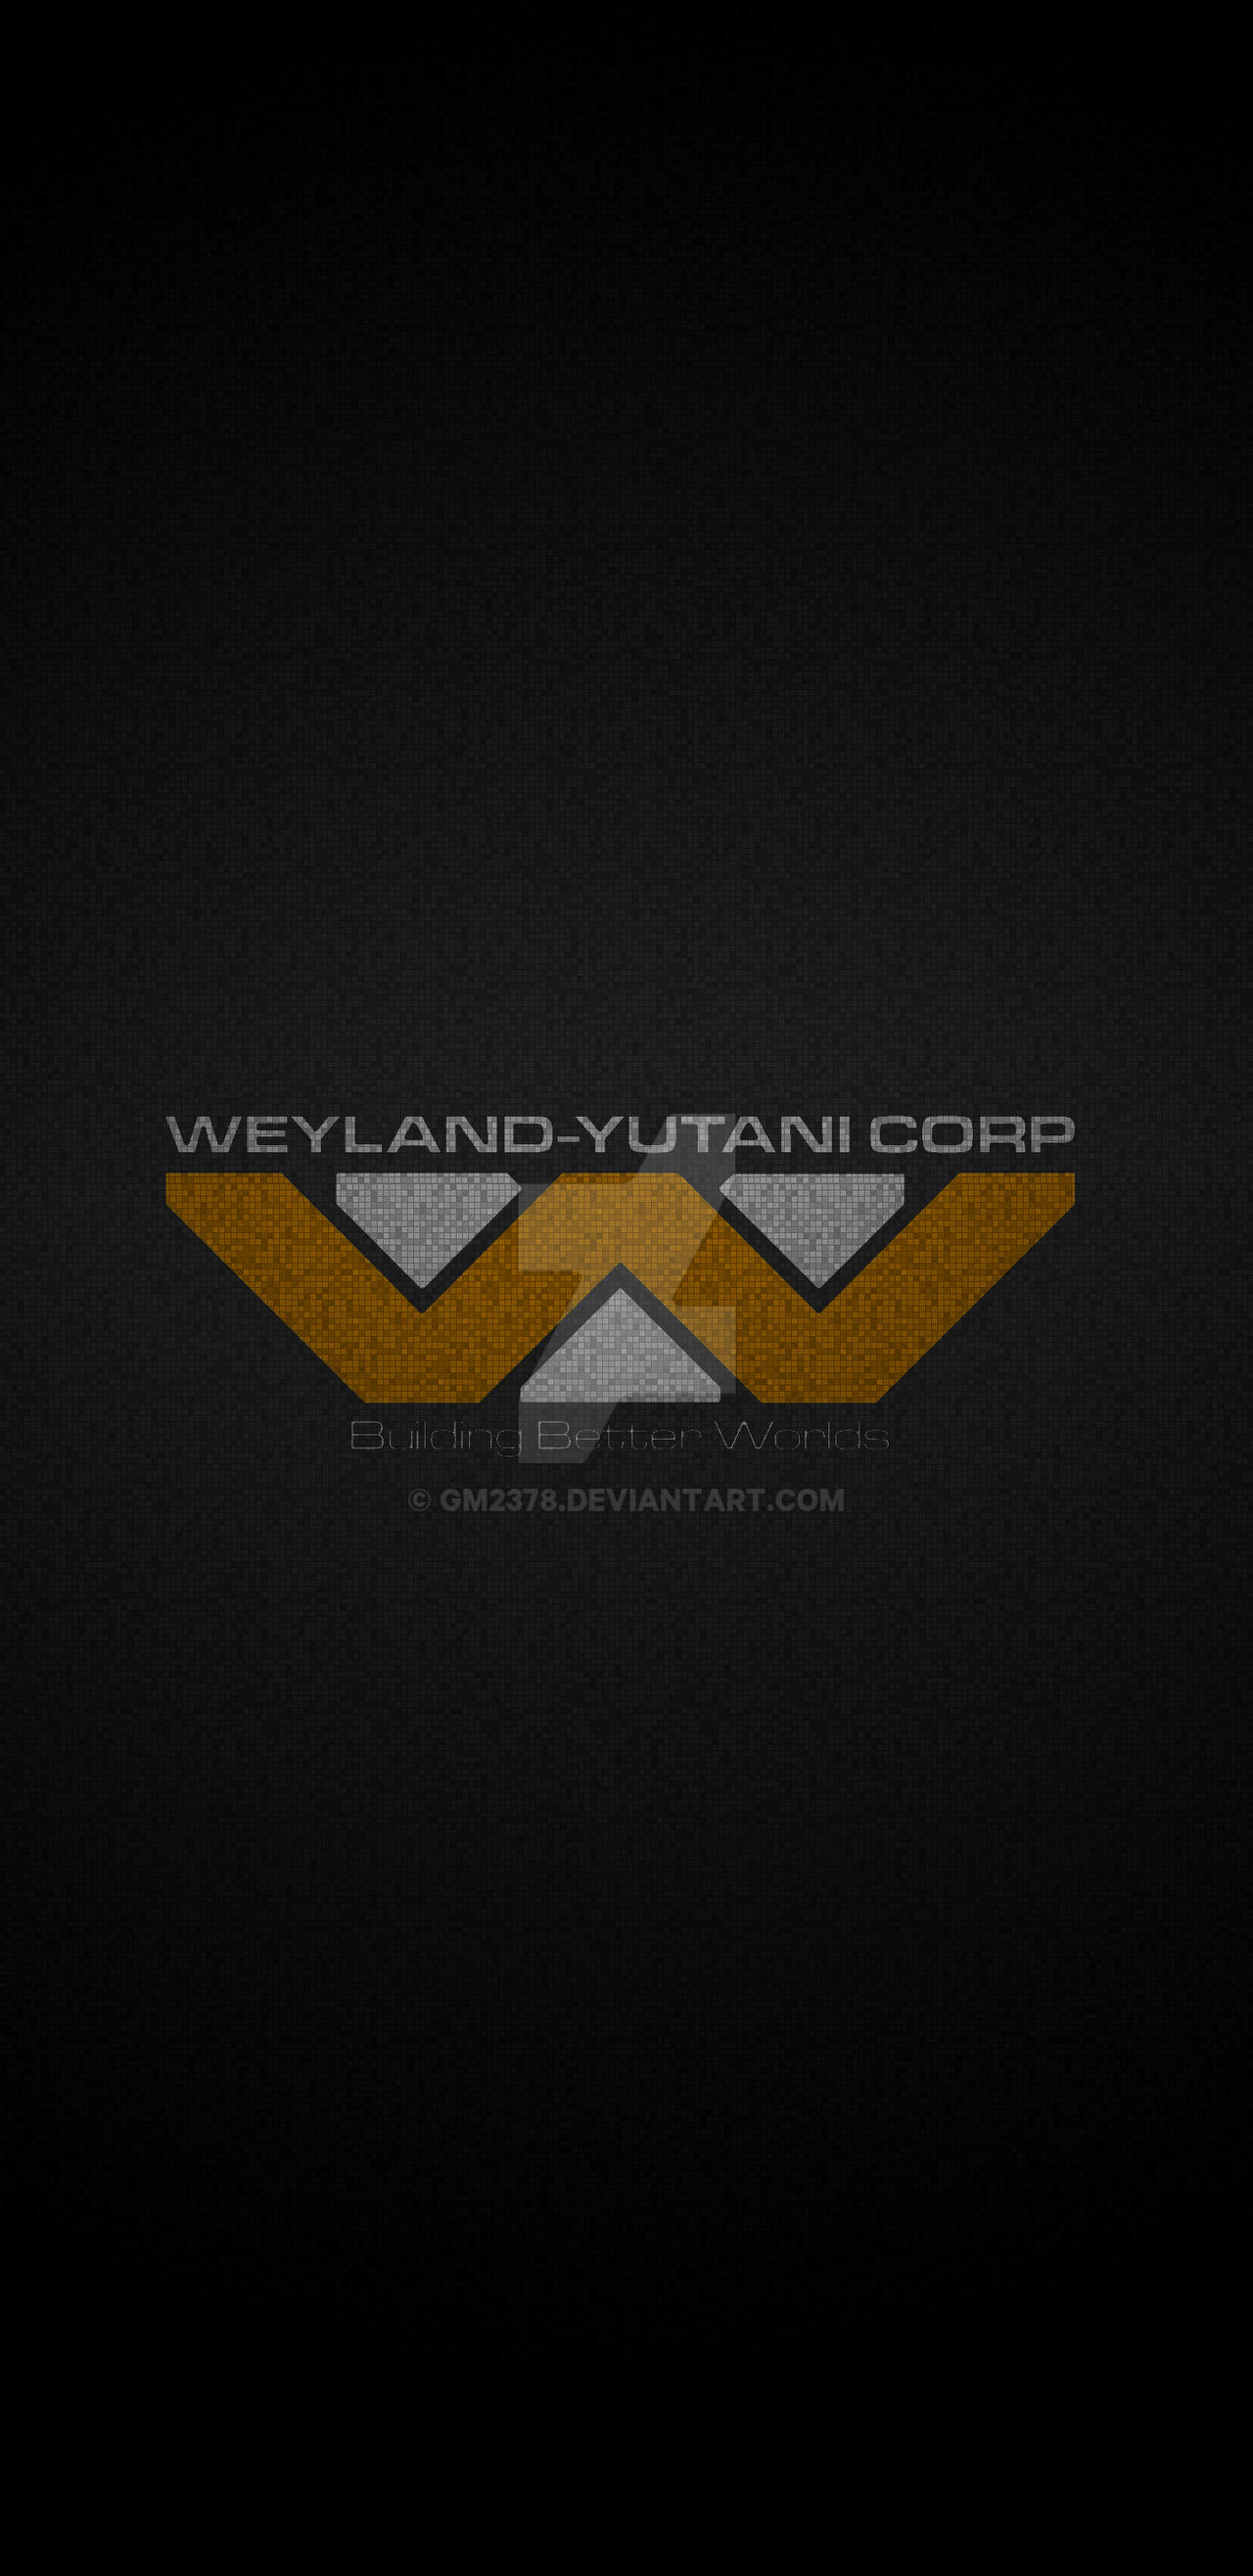 Weyland yutani wallpaper by gm on